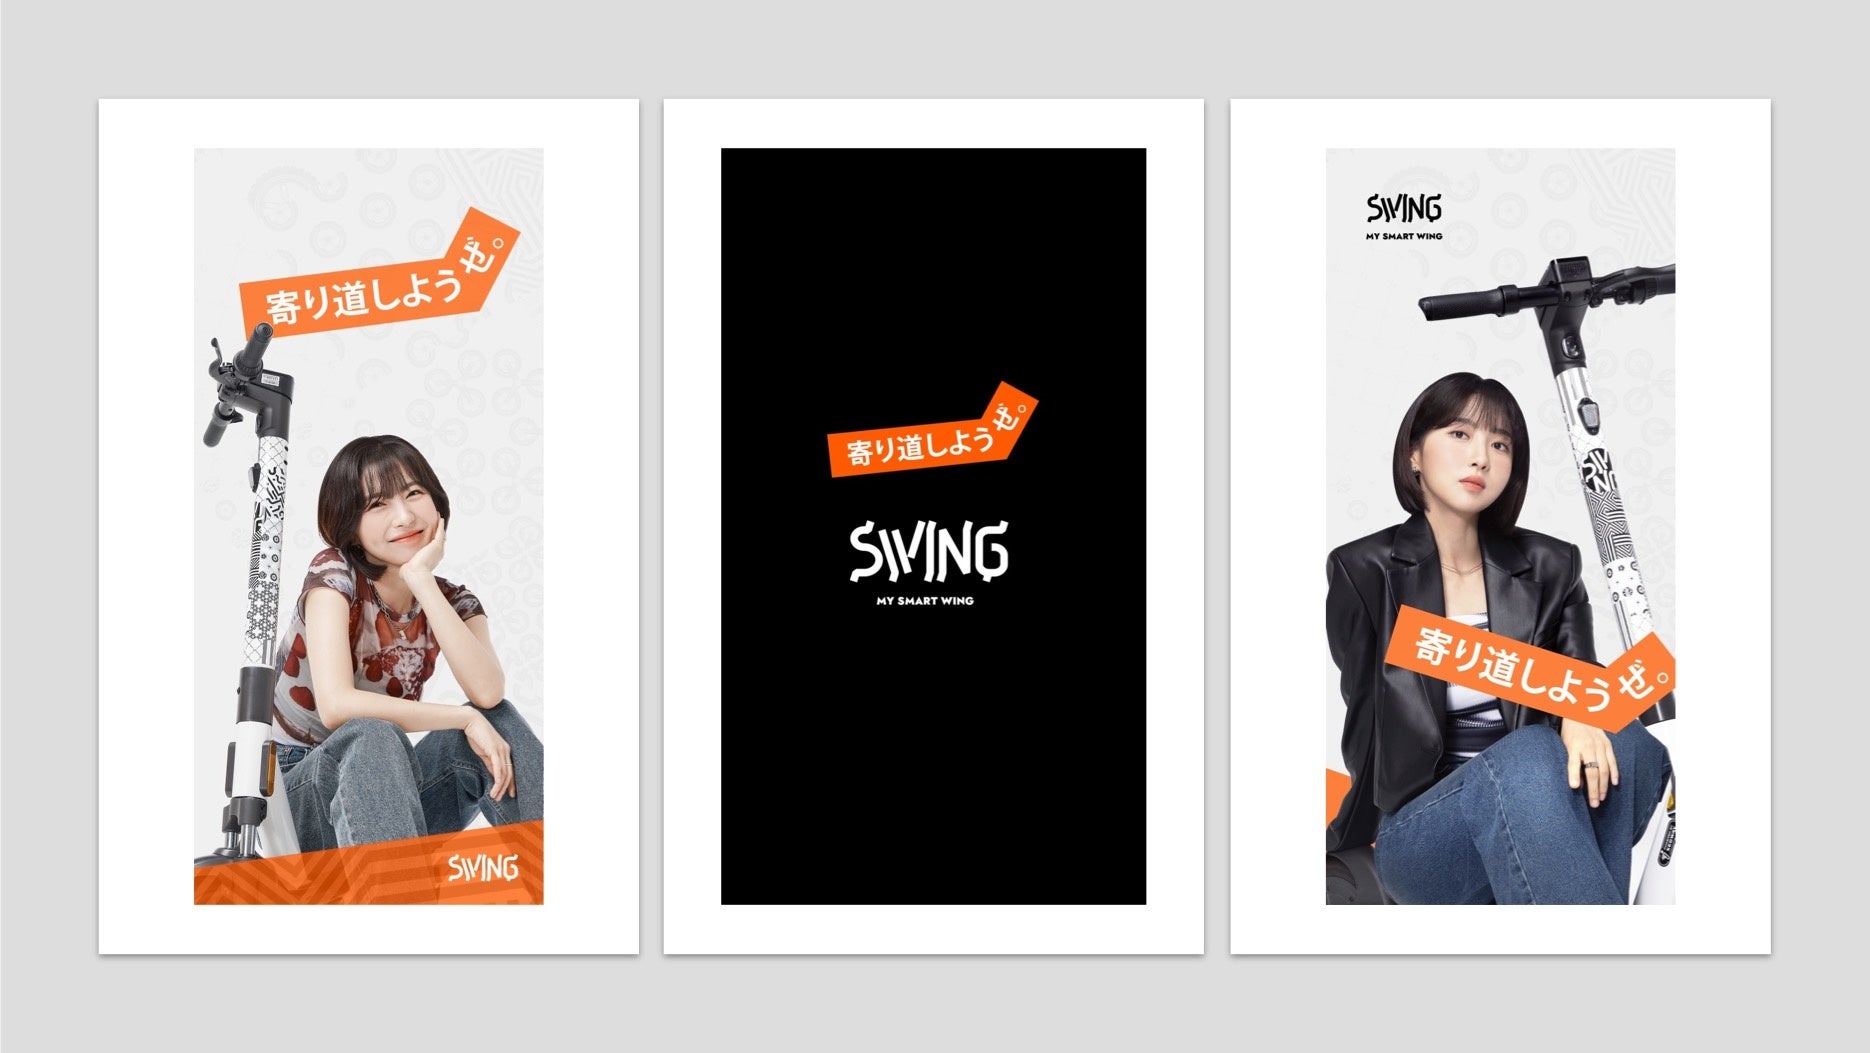 電動キックボードシェアサービスSWINGは、チュ・ヒョニョンをイメージキャラクターに！1日980円の乗り放題プラン「SWING PASS」を発表。のサブ画像1